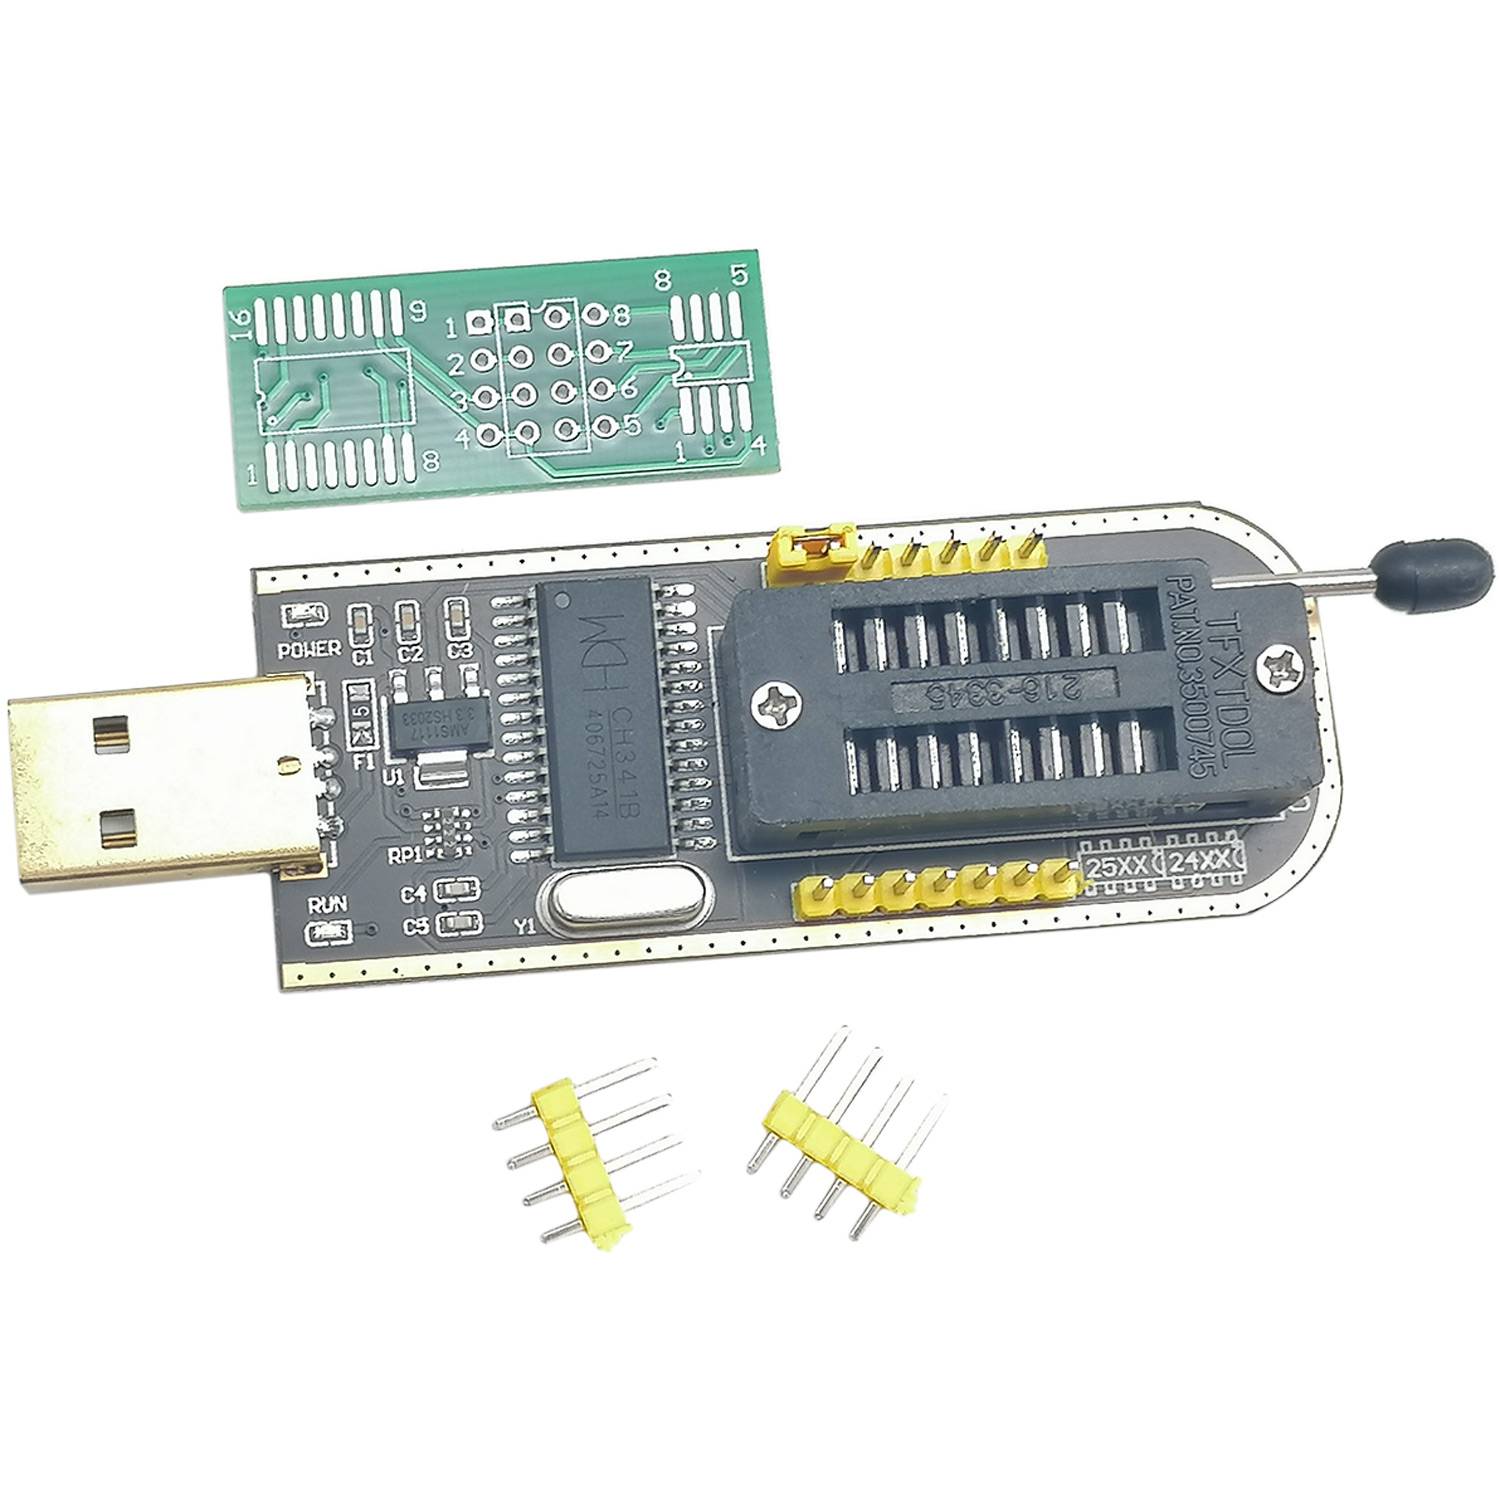 Программатор 24 EEPROM и 25 SPI FLASH на CH341A USB